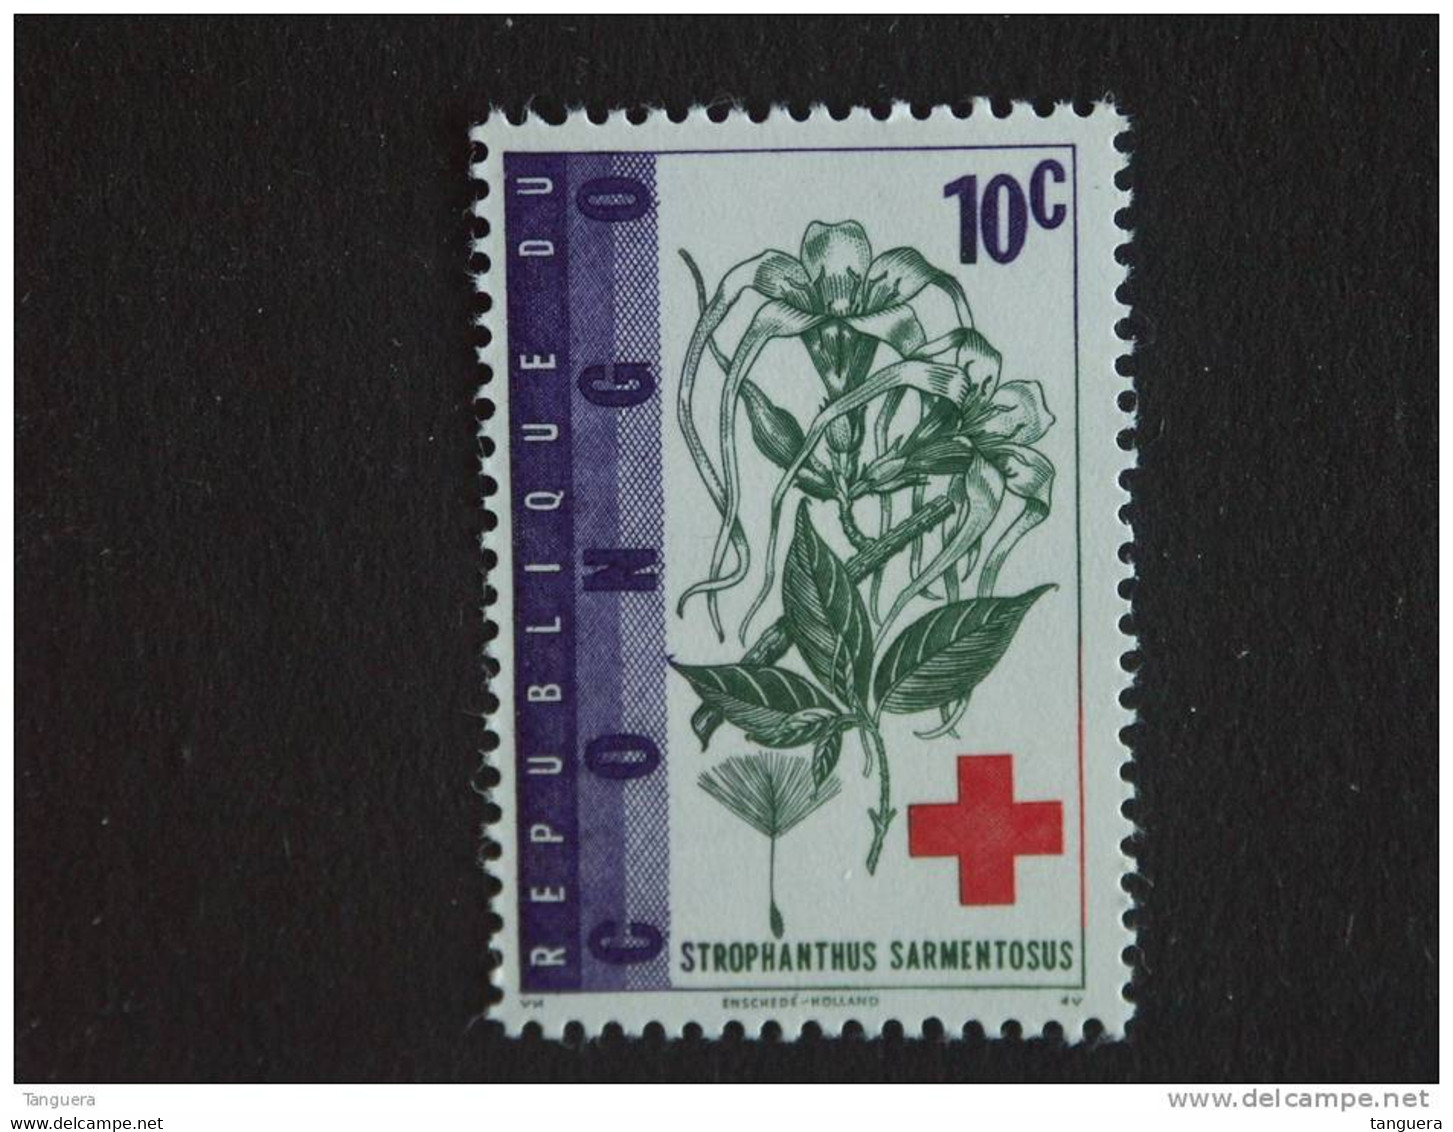 Congo Republique Republiek 1963 Rode Kruis Croix Rouge Strophanthus Plante Yv COB 495 MNH ** - Nuovi